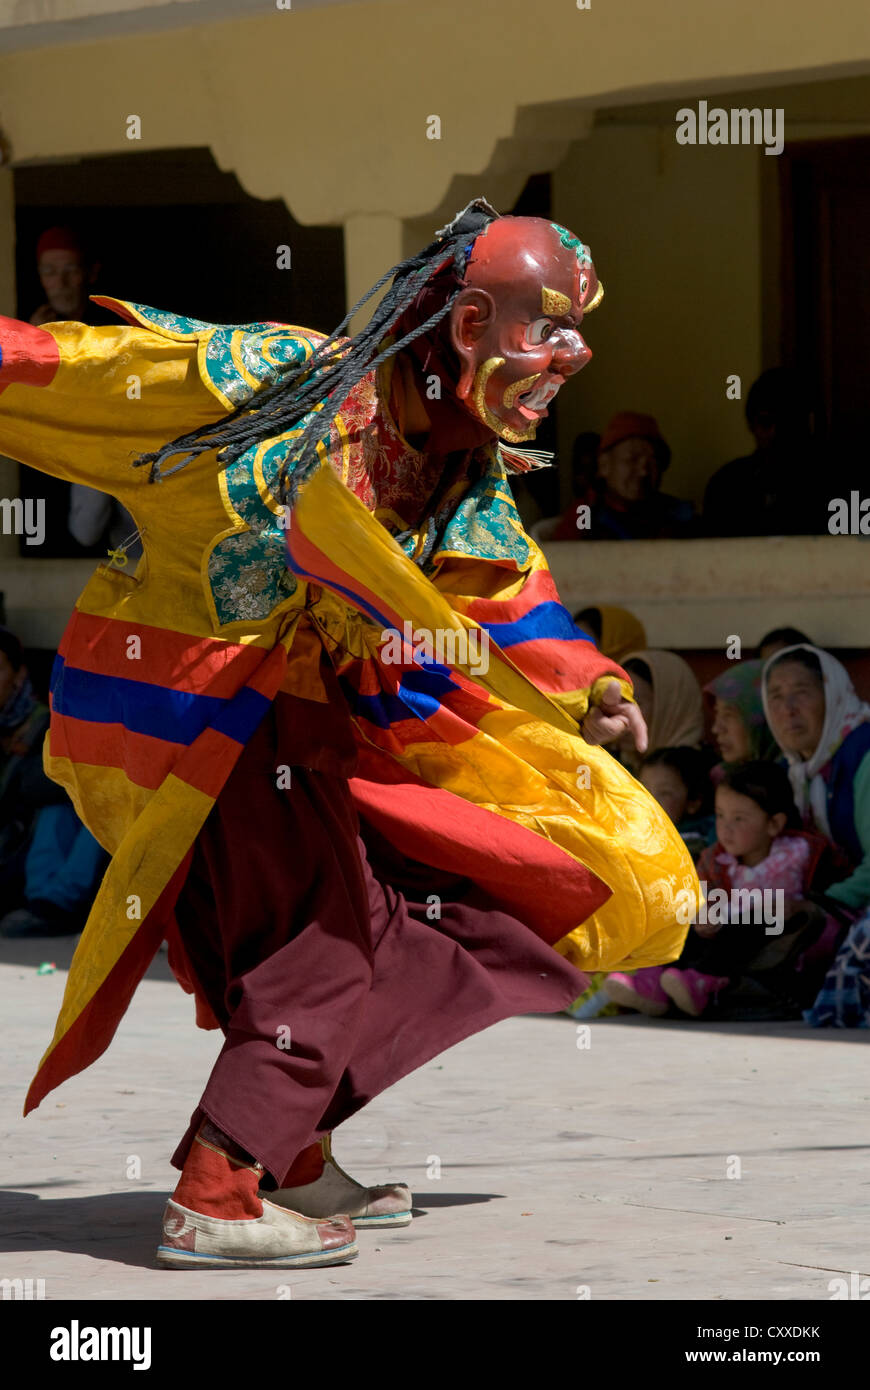 Una mascherata monaco buddista esegue una danza rituale in occasione dell'annuale Festival Kungri nel Pin valley, Spiti, India settentrionale Foto Stock